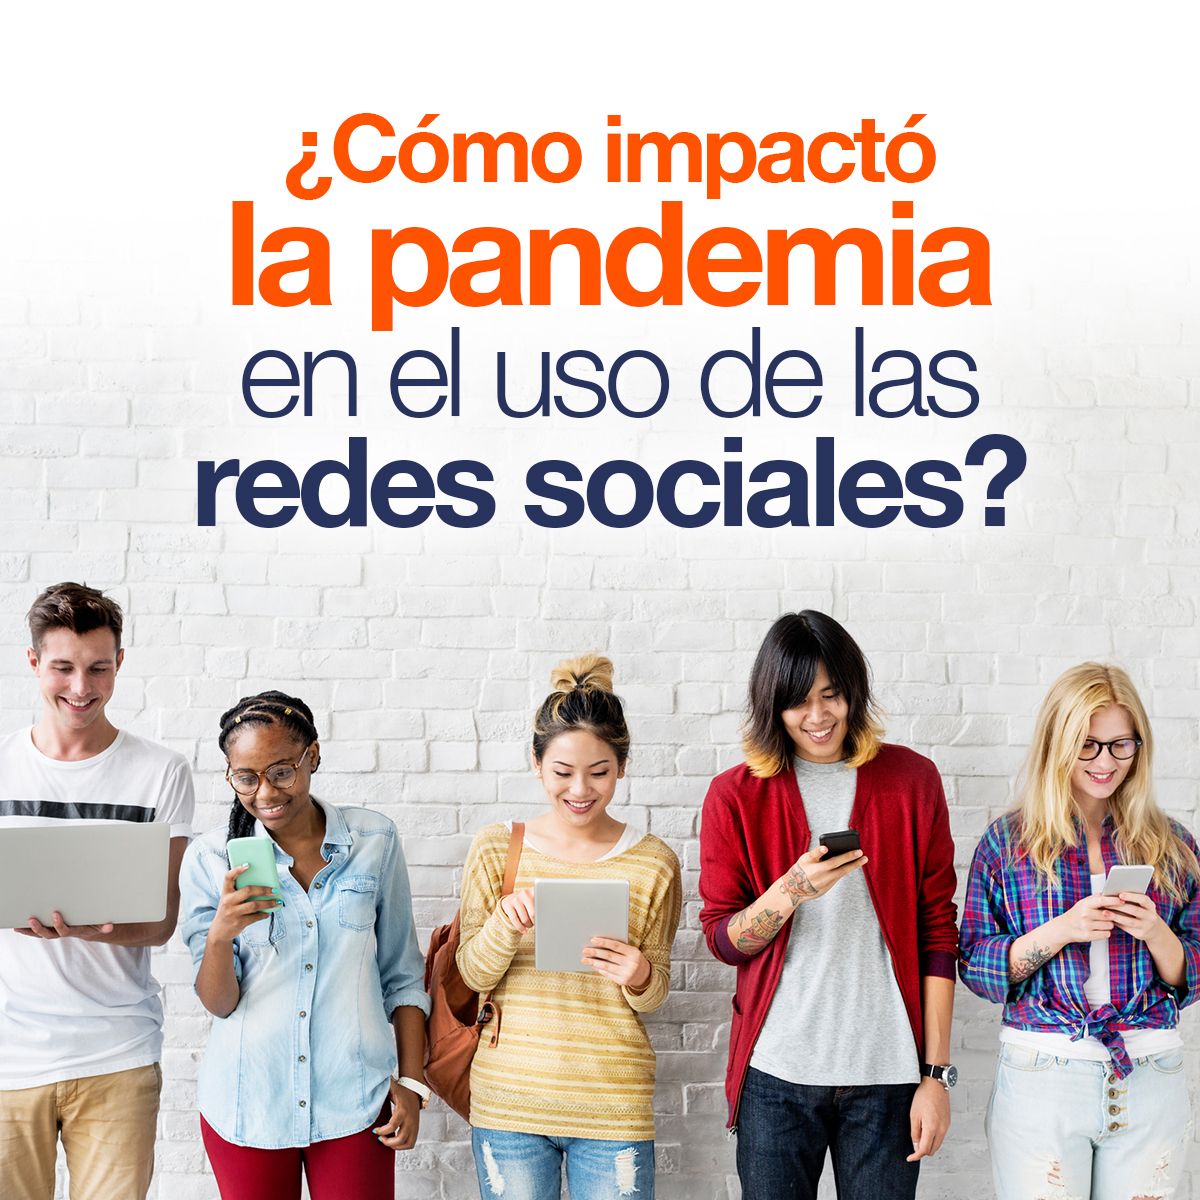 ¿Cómo impactó la pandemia en el uso del social media?